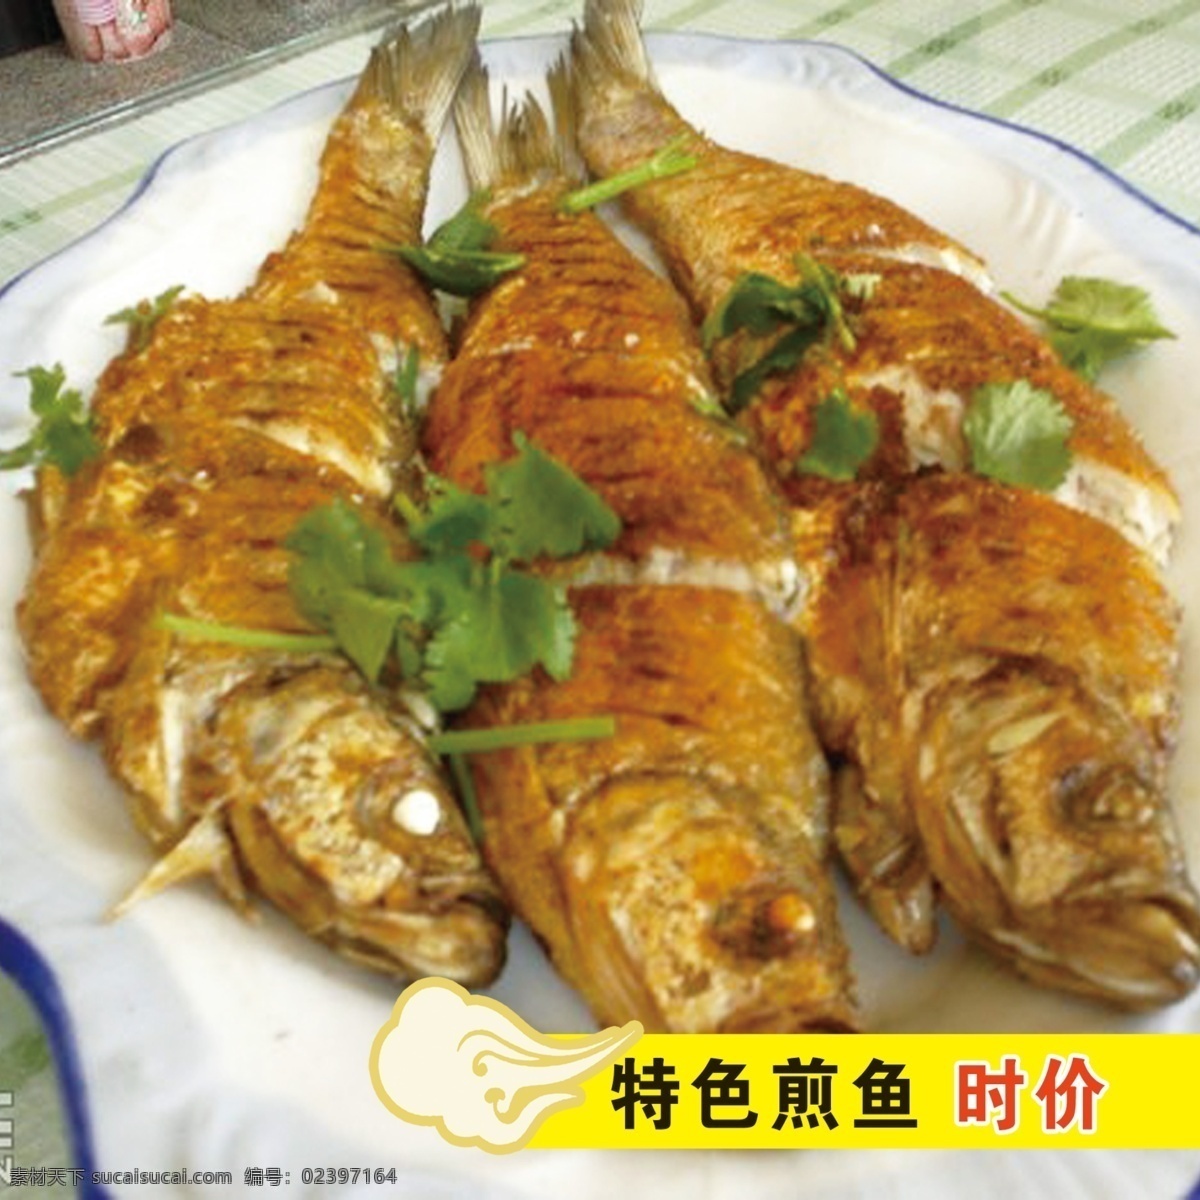 厨房 油炸锅 油炸鱼 海鱼 海鲜 炸鱼 炸鱼块 煎鱼锅 锅 香煎鱼 香酥鱼 餐饮美食 传统美食